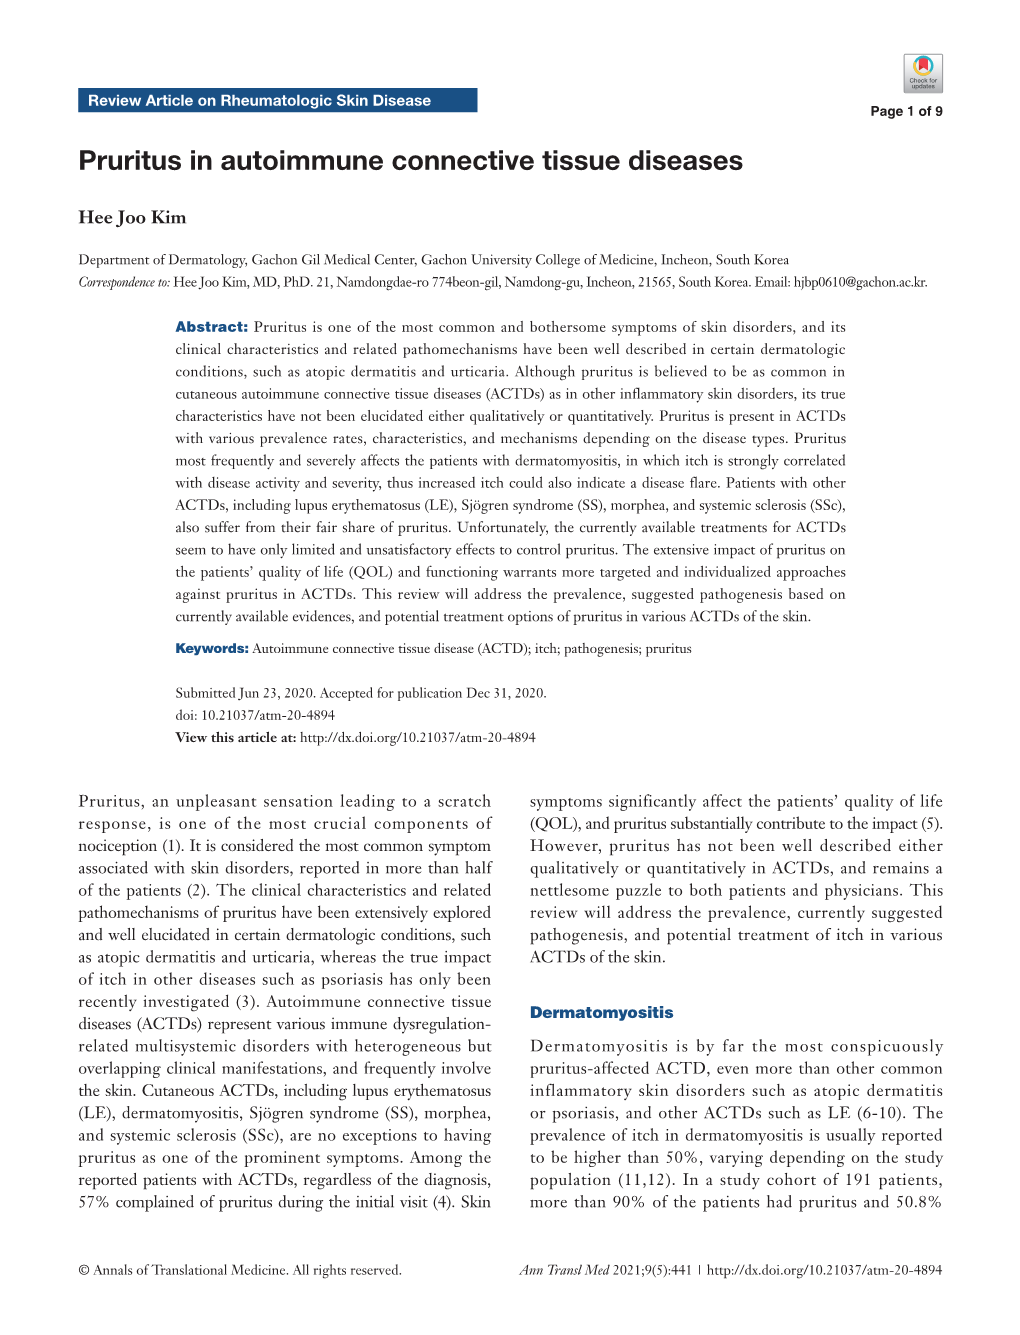 Pruritus in Autoimmune Connective Tissue Diseases